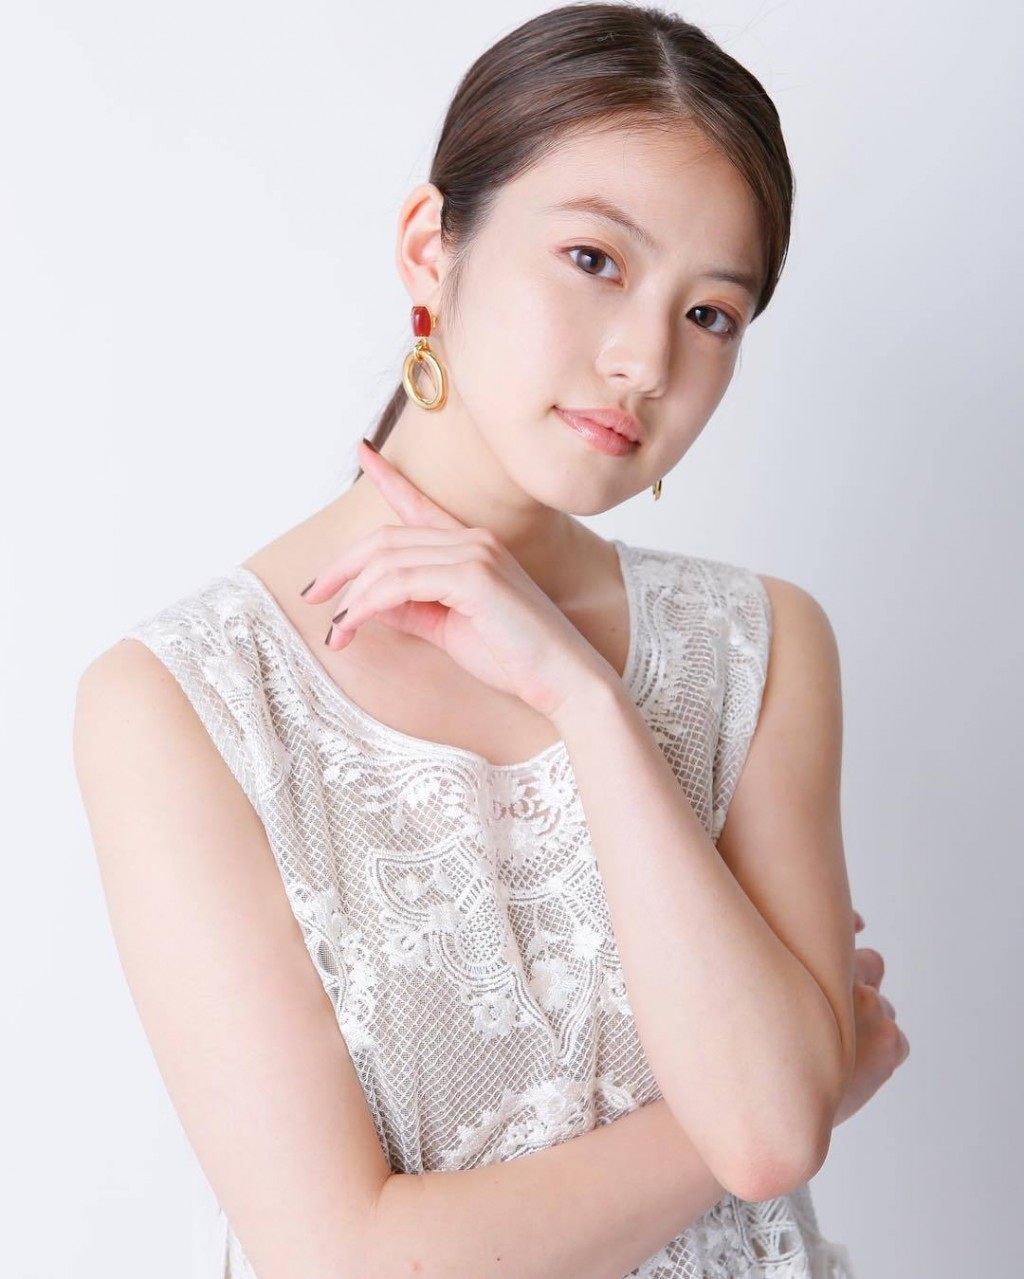 今田美樱Mio Imada白色蕾丝裙纯美写真图片